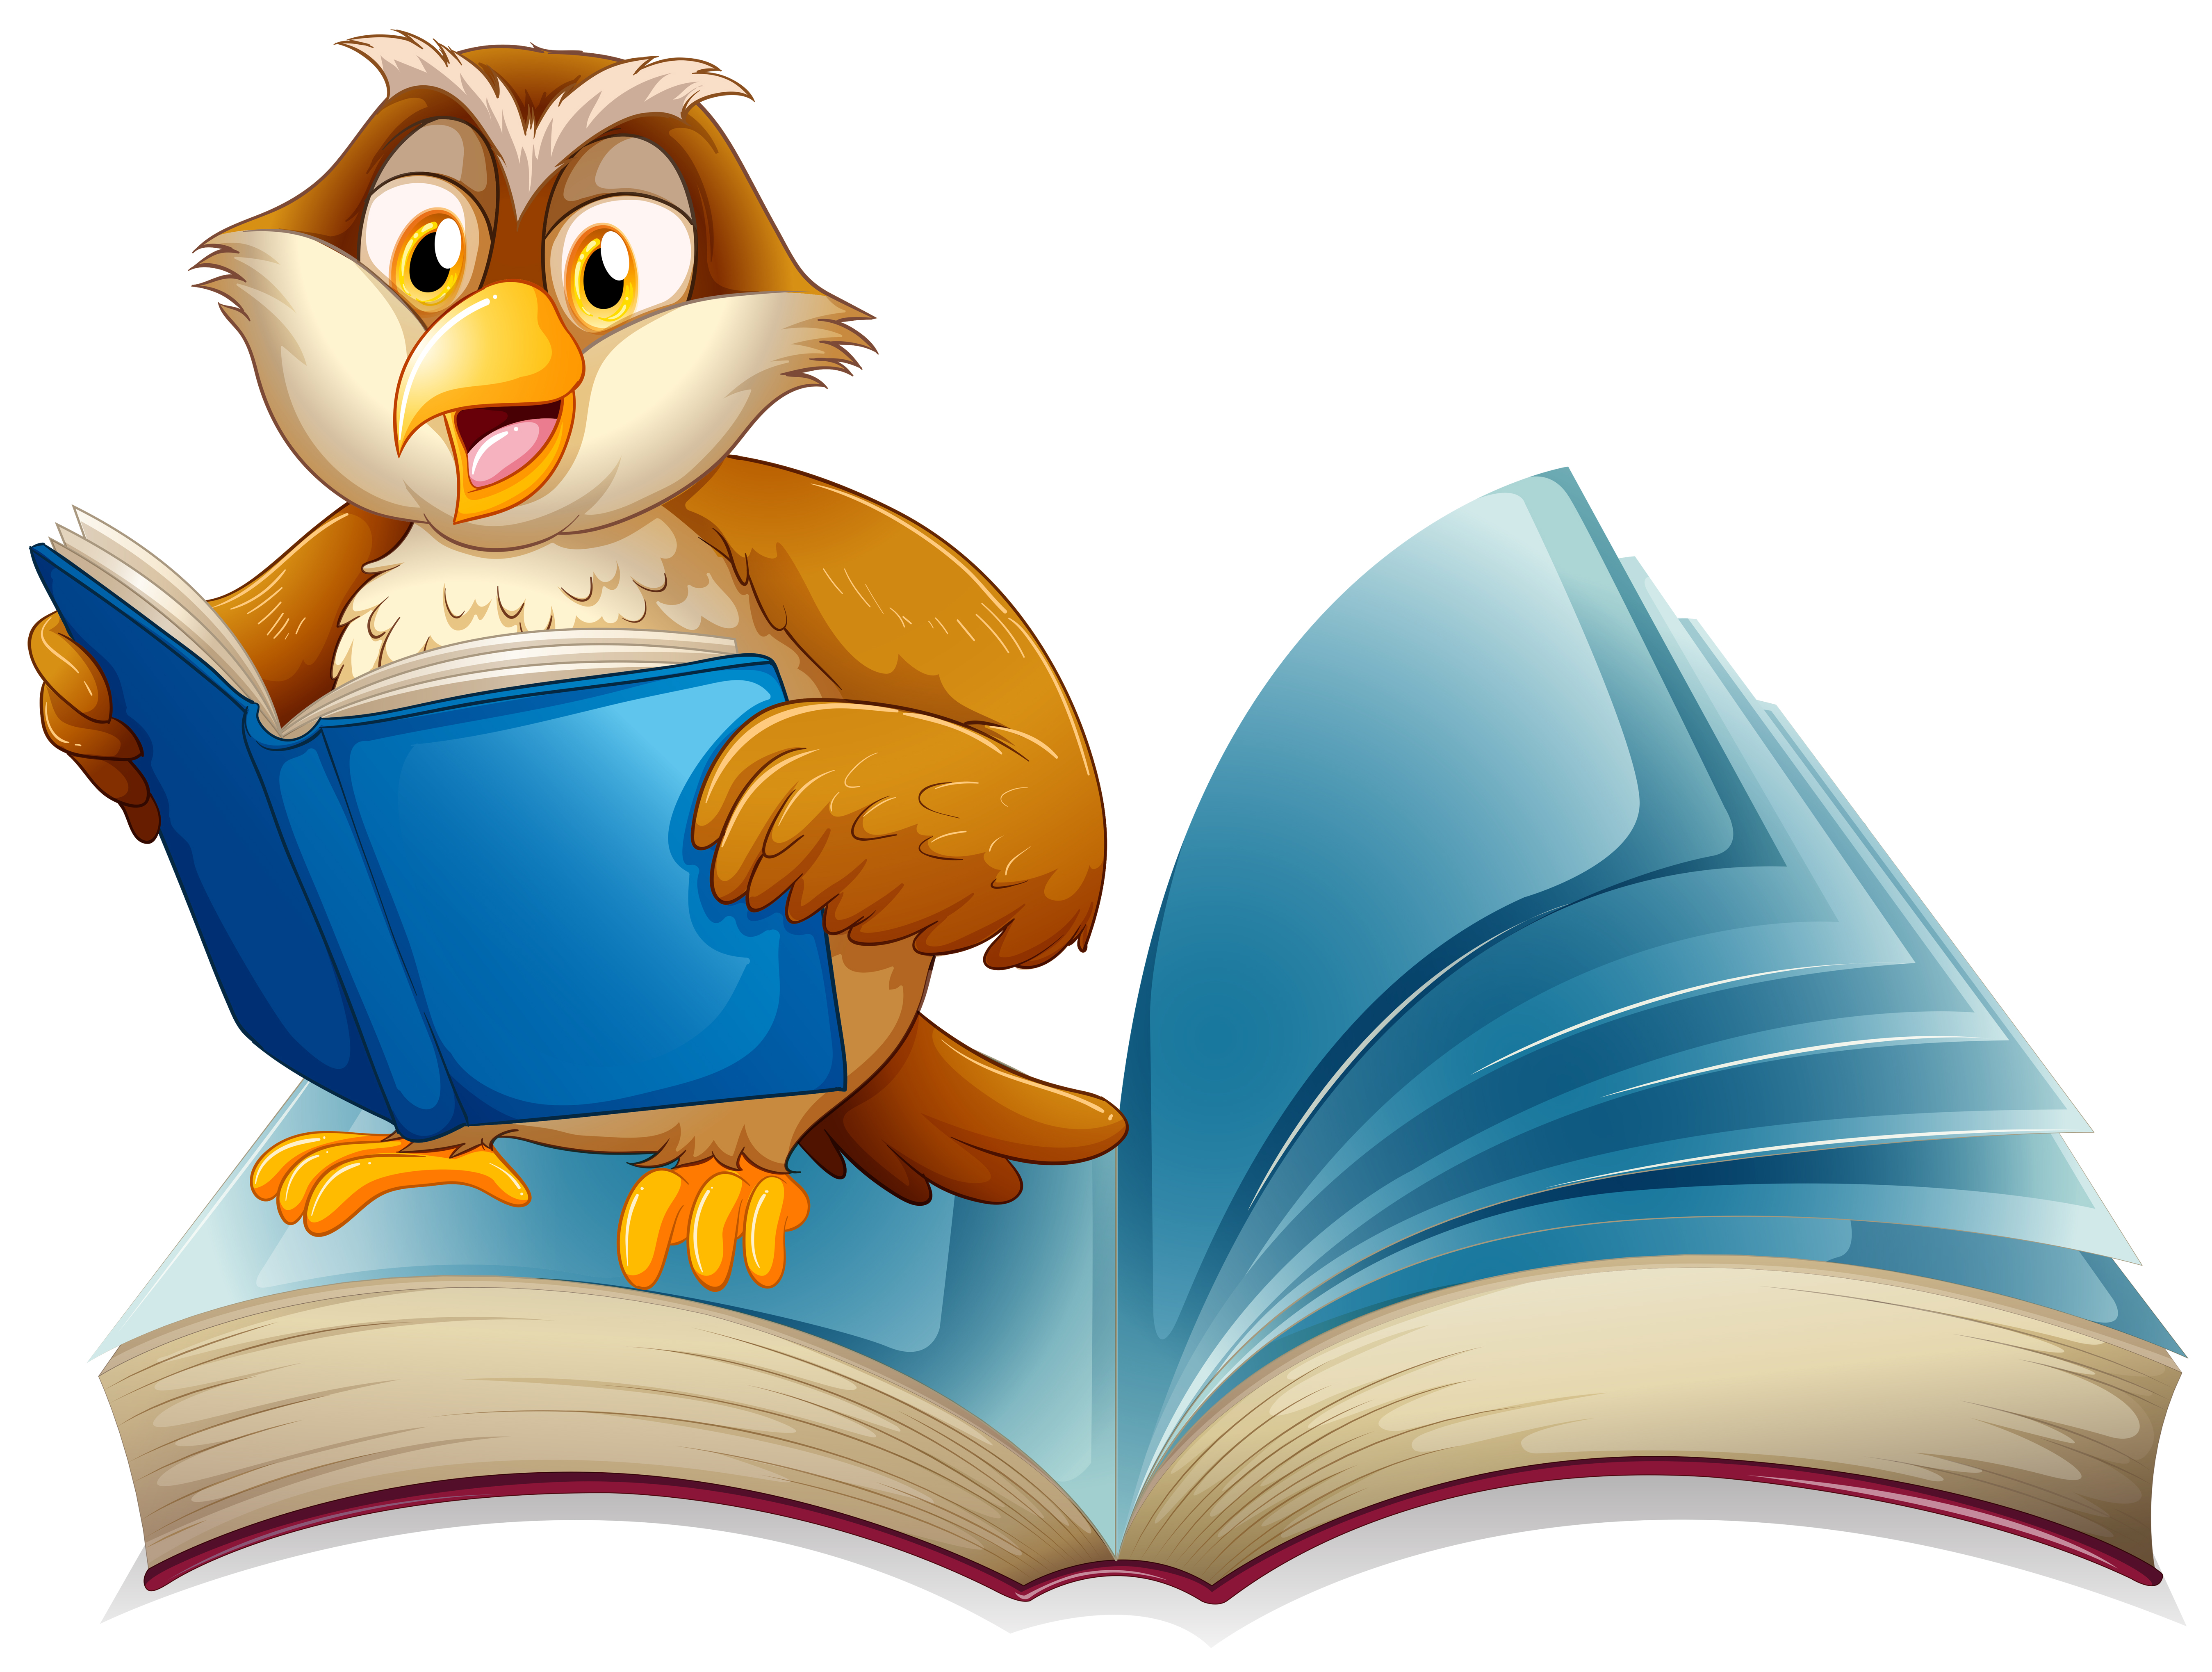 Cute owl reading a book - Download Free Vectors, Clipart ...